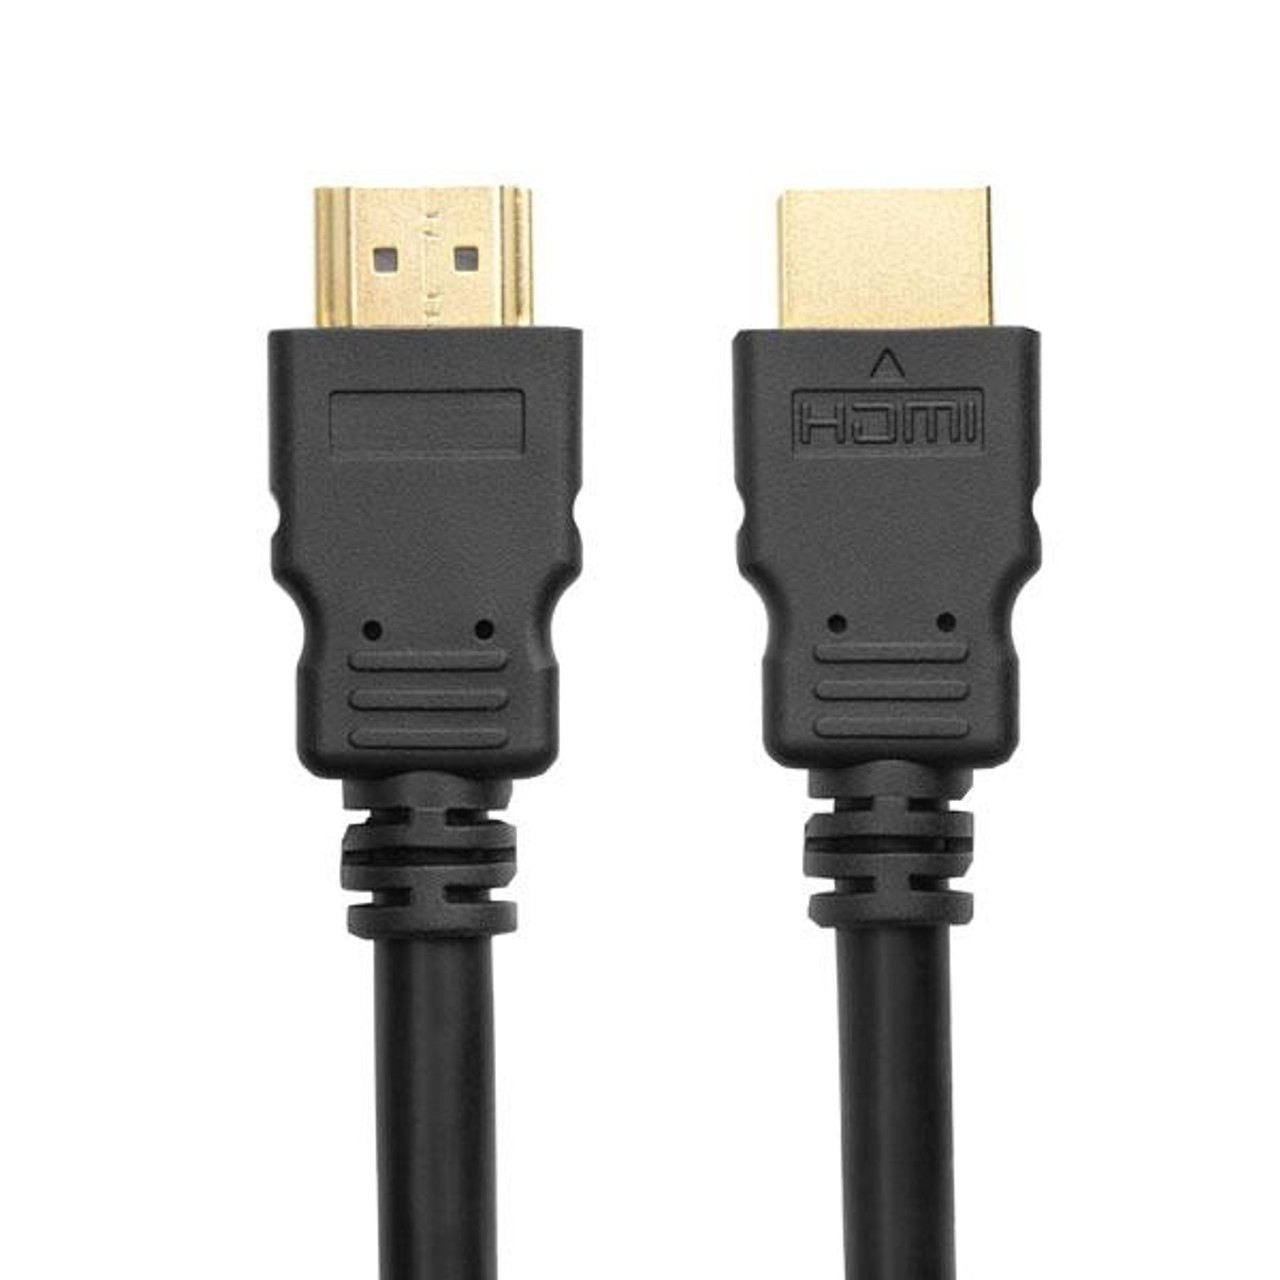 Male HDMI / female HDMI cable 2m - T'nB